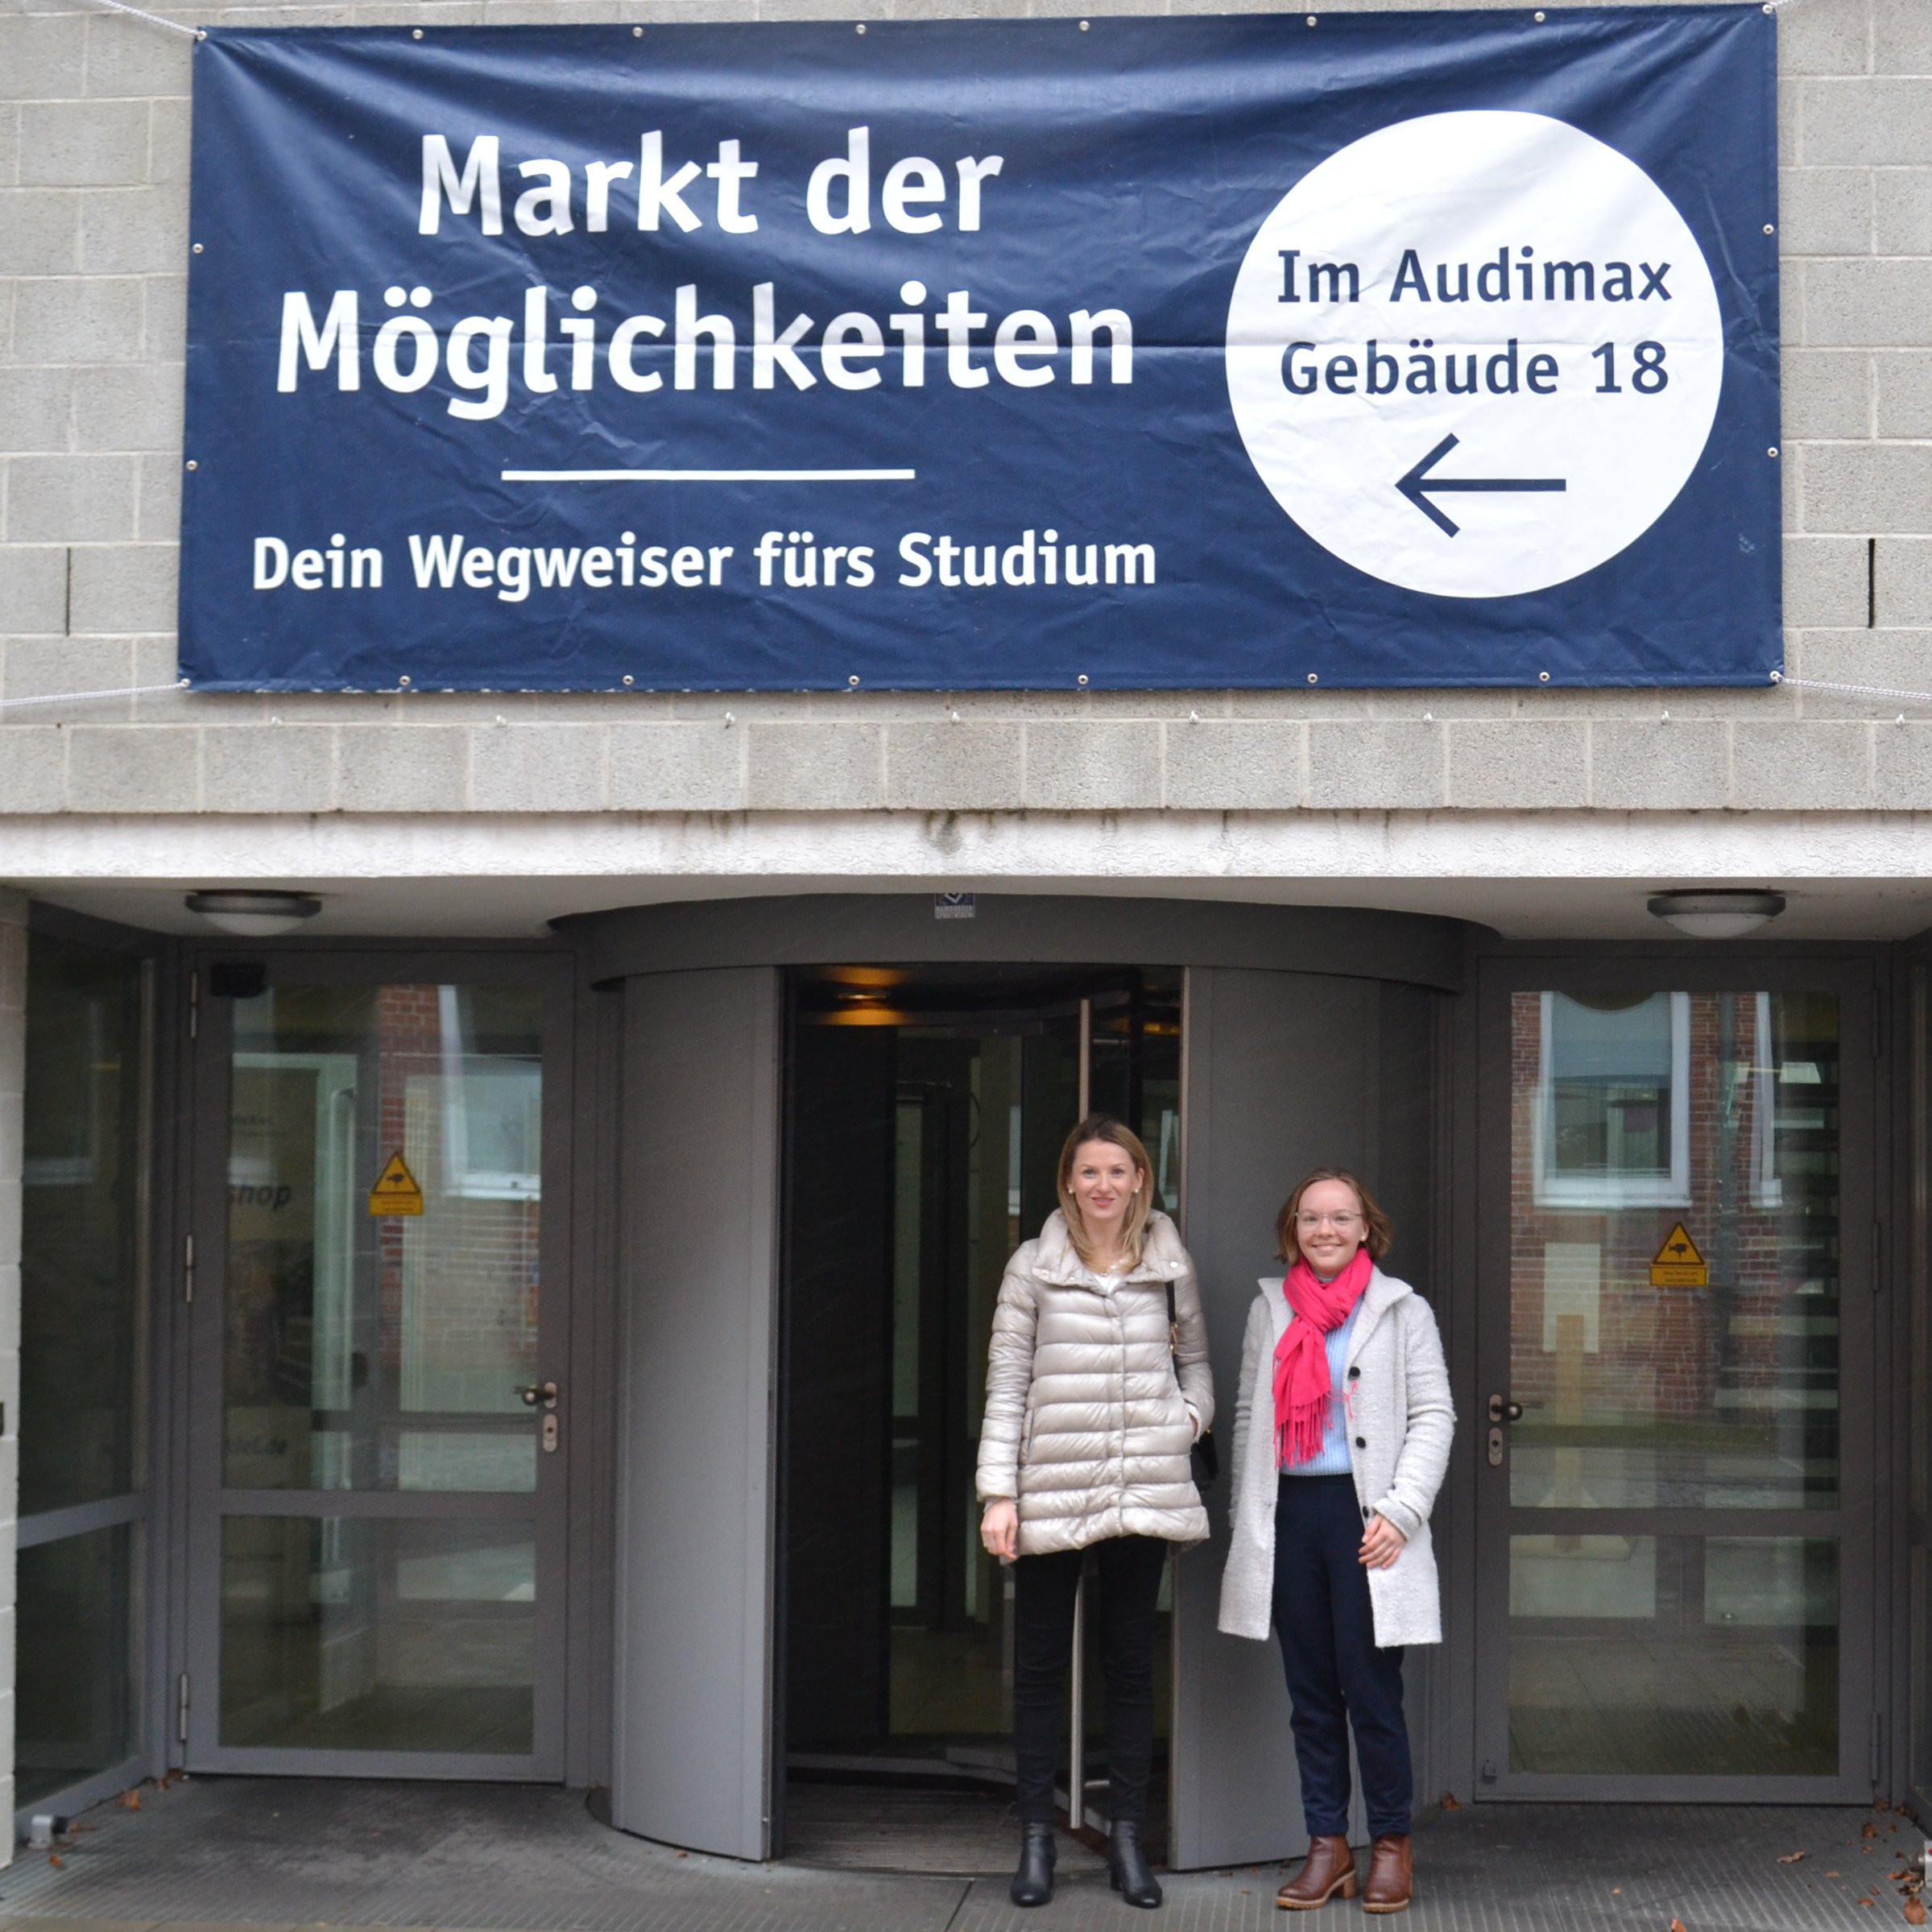 zwei Frauen vor einem Gebäude, hinter ihnen hängt ein Banner mit der Aufschrift: Markt der Möglichkeiten - Dein Wegweiser fürs Studium